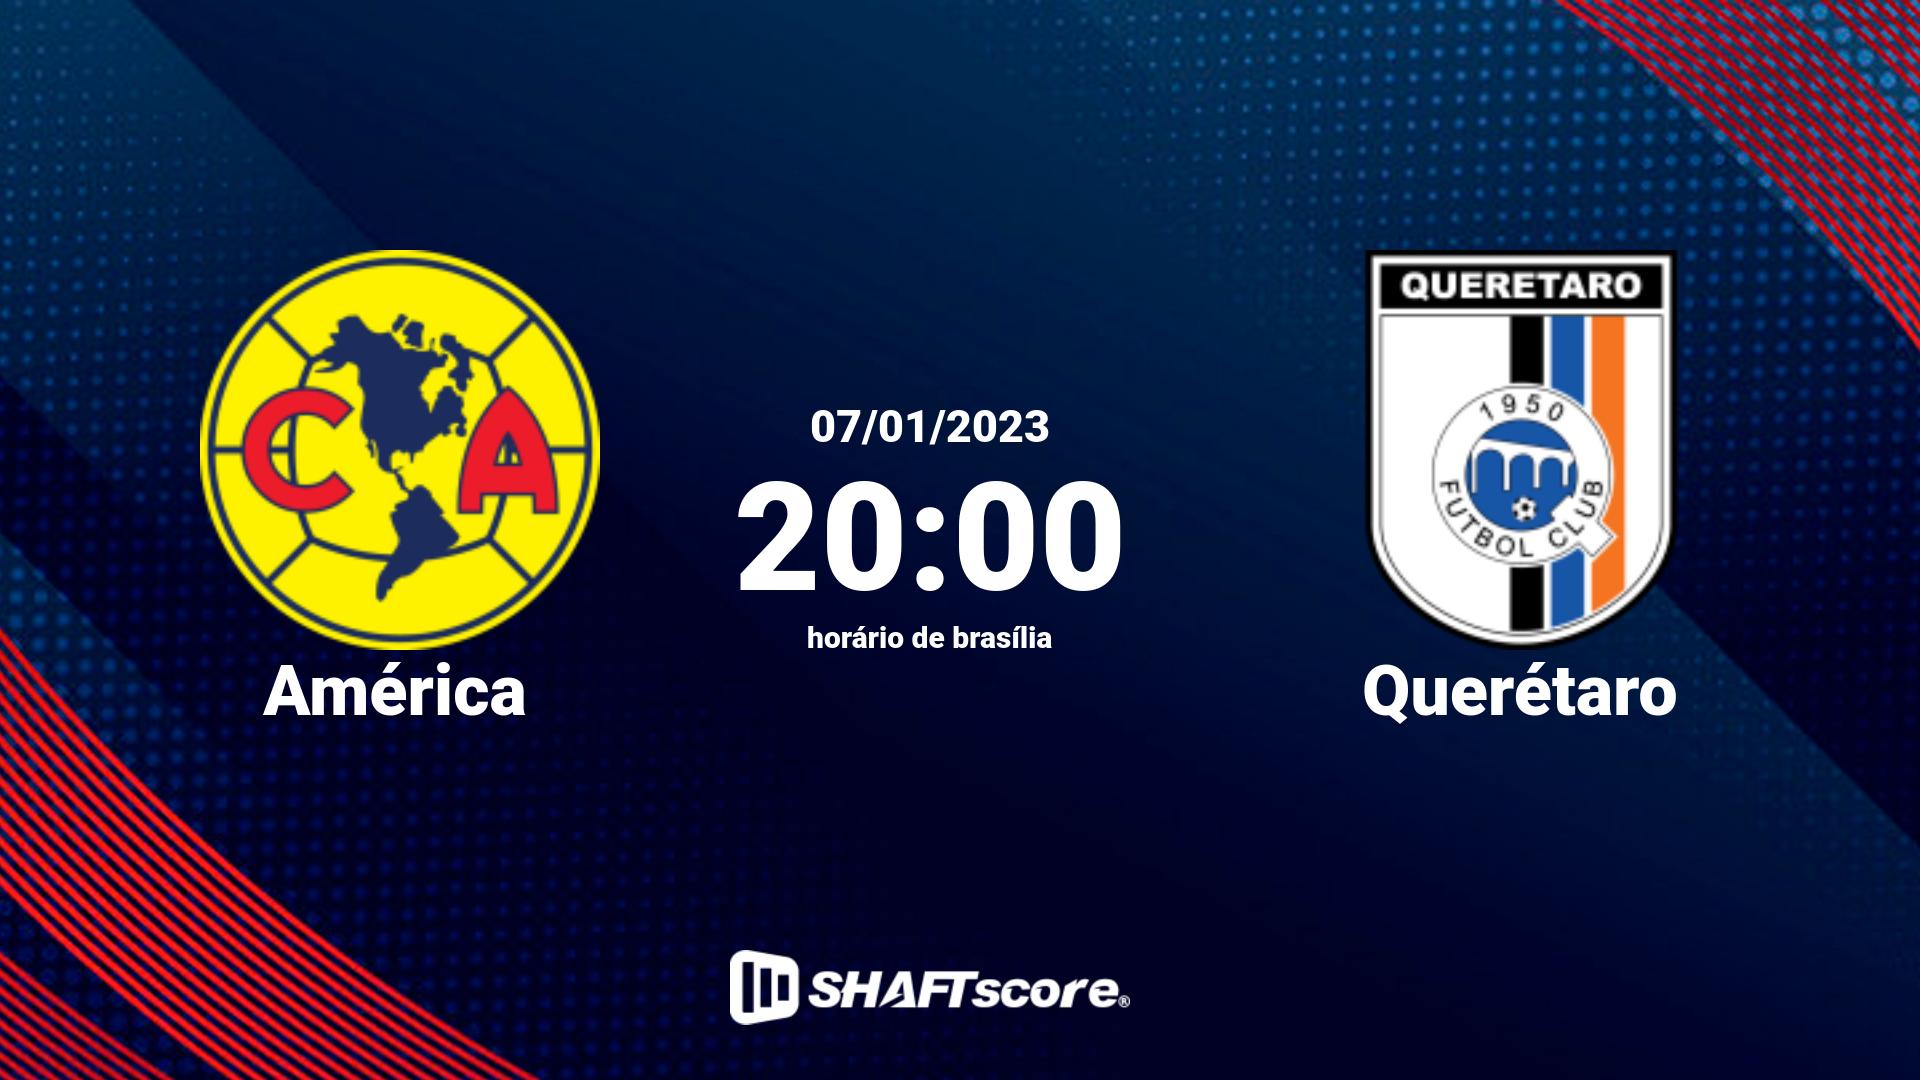 Estatísticas do jogo América vs Querétaro 07.01 20:00